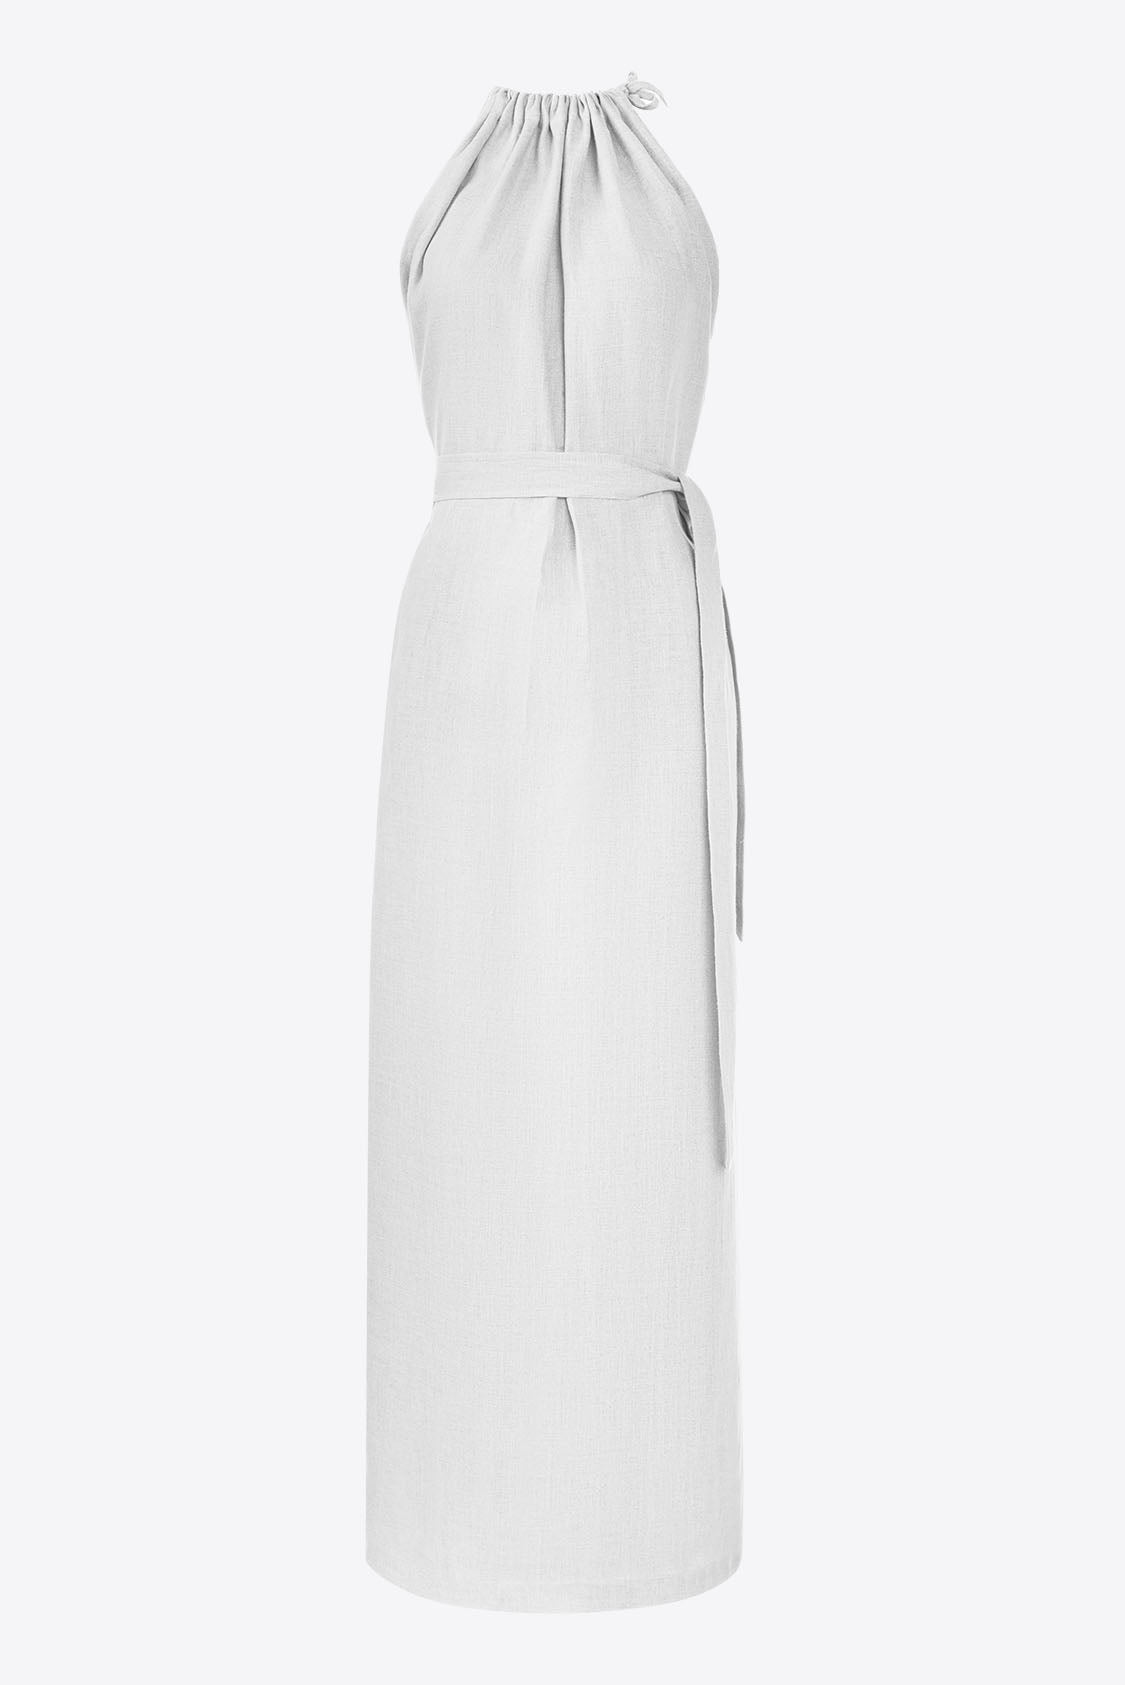 Lniana sukienka maxi elegancka biała - Amalfi od Holystic.pl